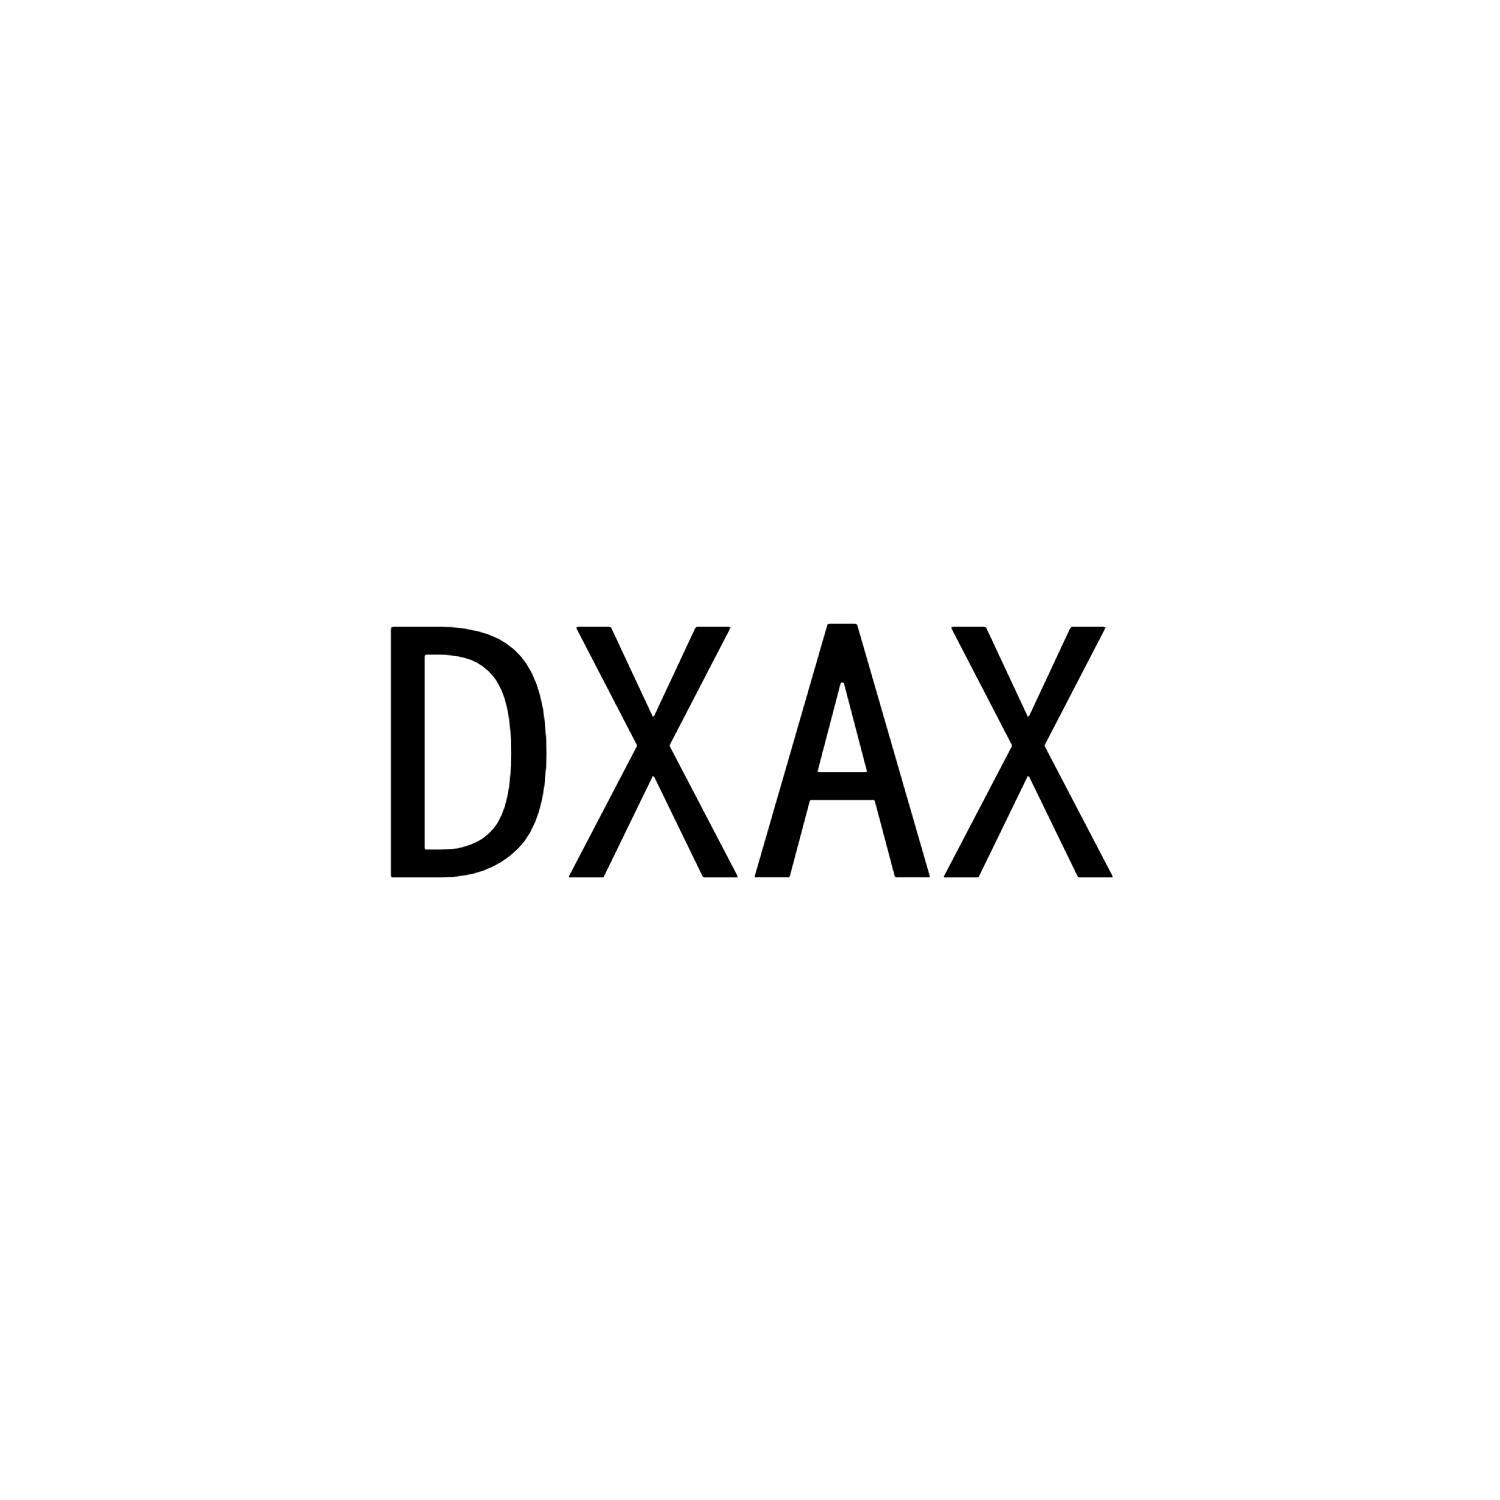 DXAX